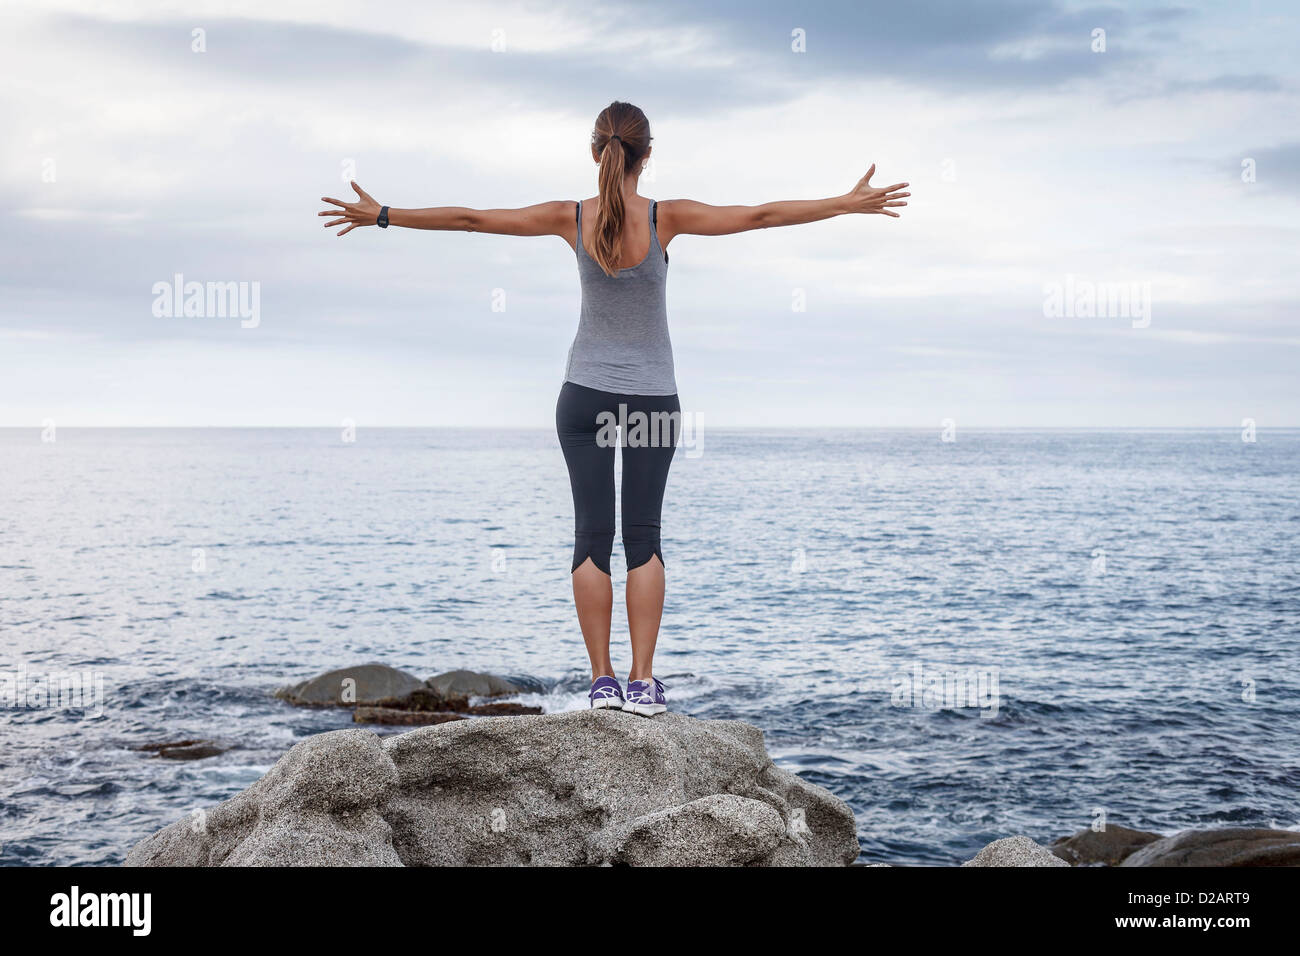 Frau auf Felsen mit Blick auf Meer Stockfoto